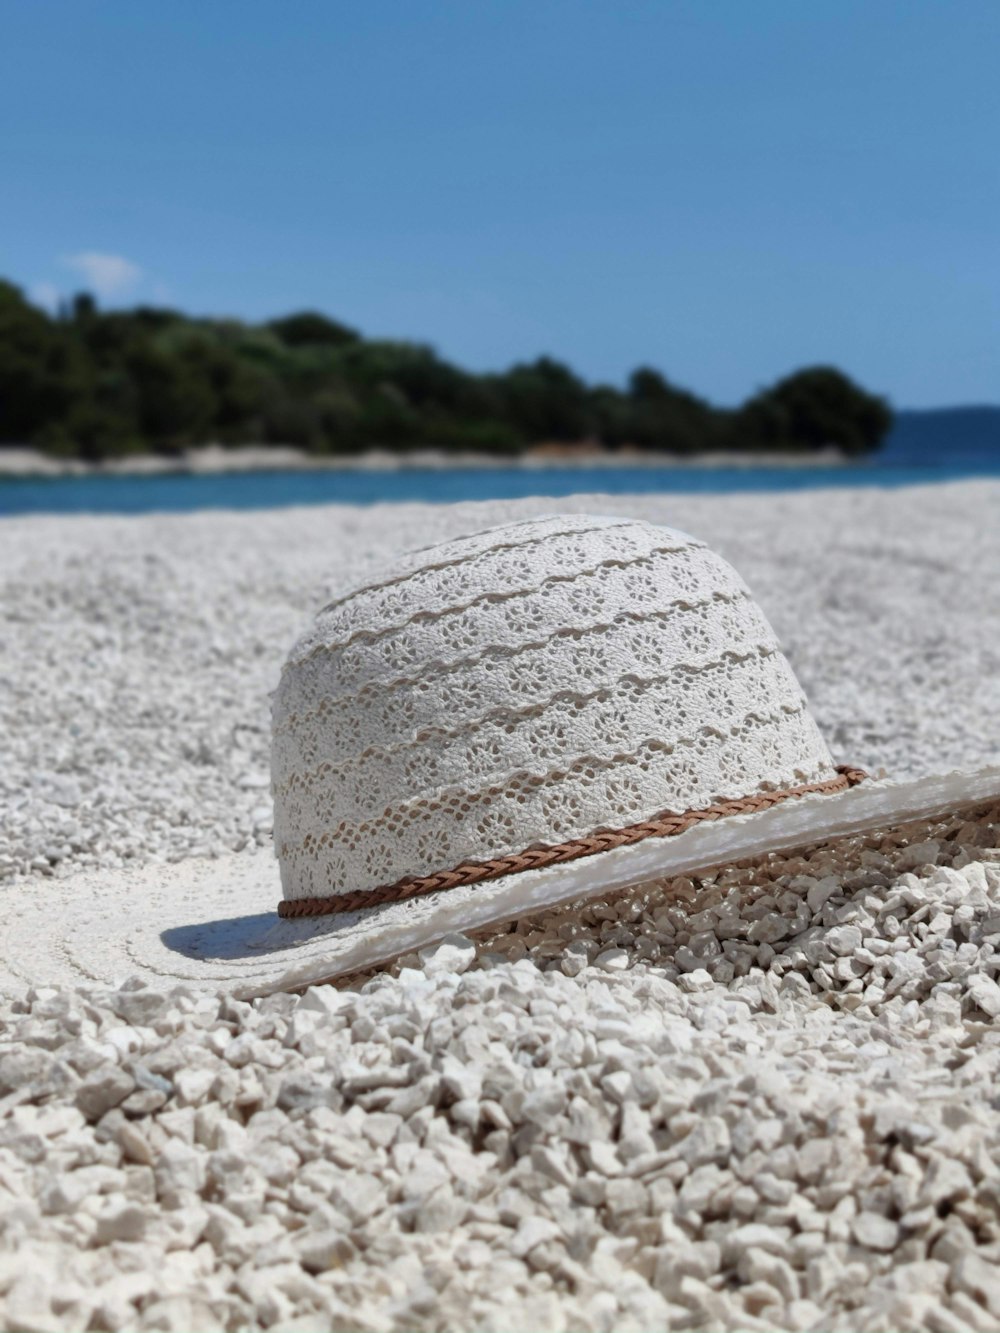 cappello da sole bianco e blu sulla spiaggia di sabbia bianca durante il giorno